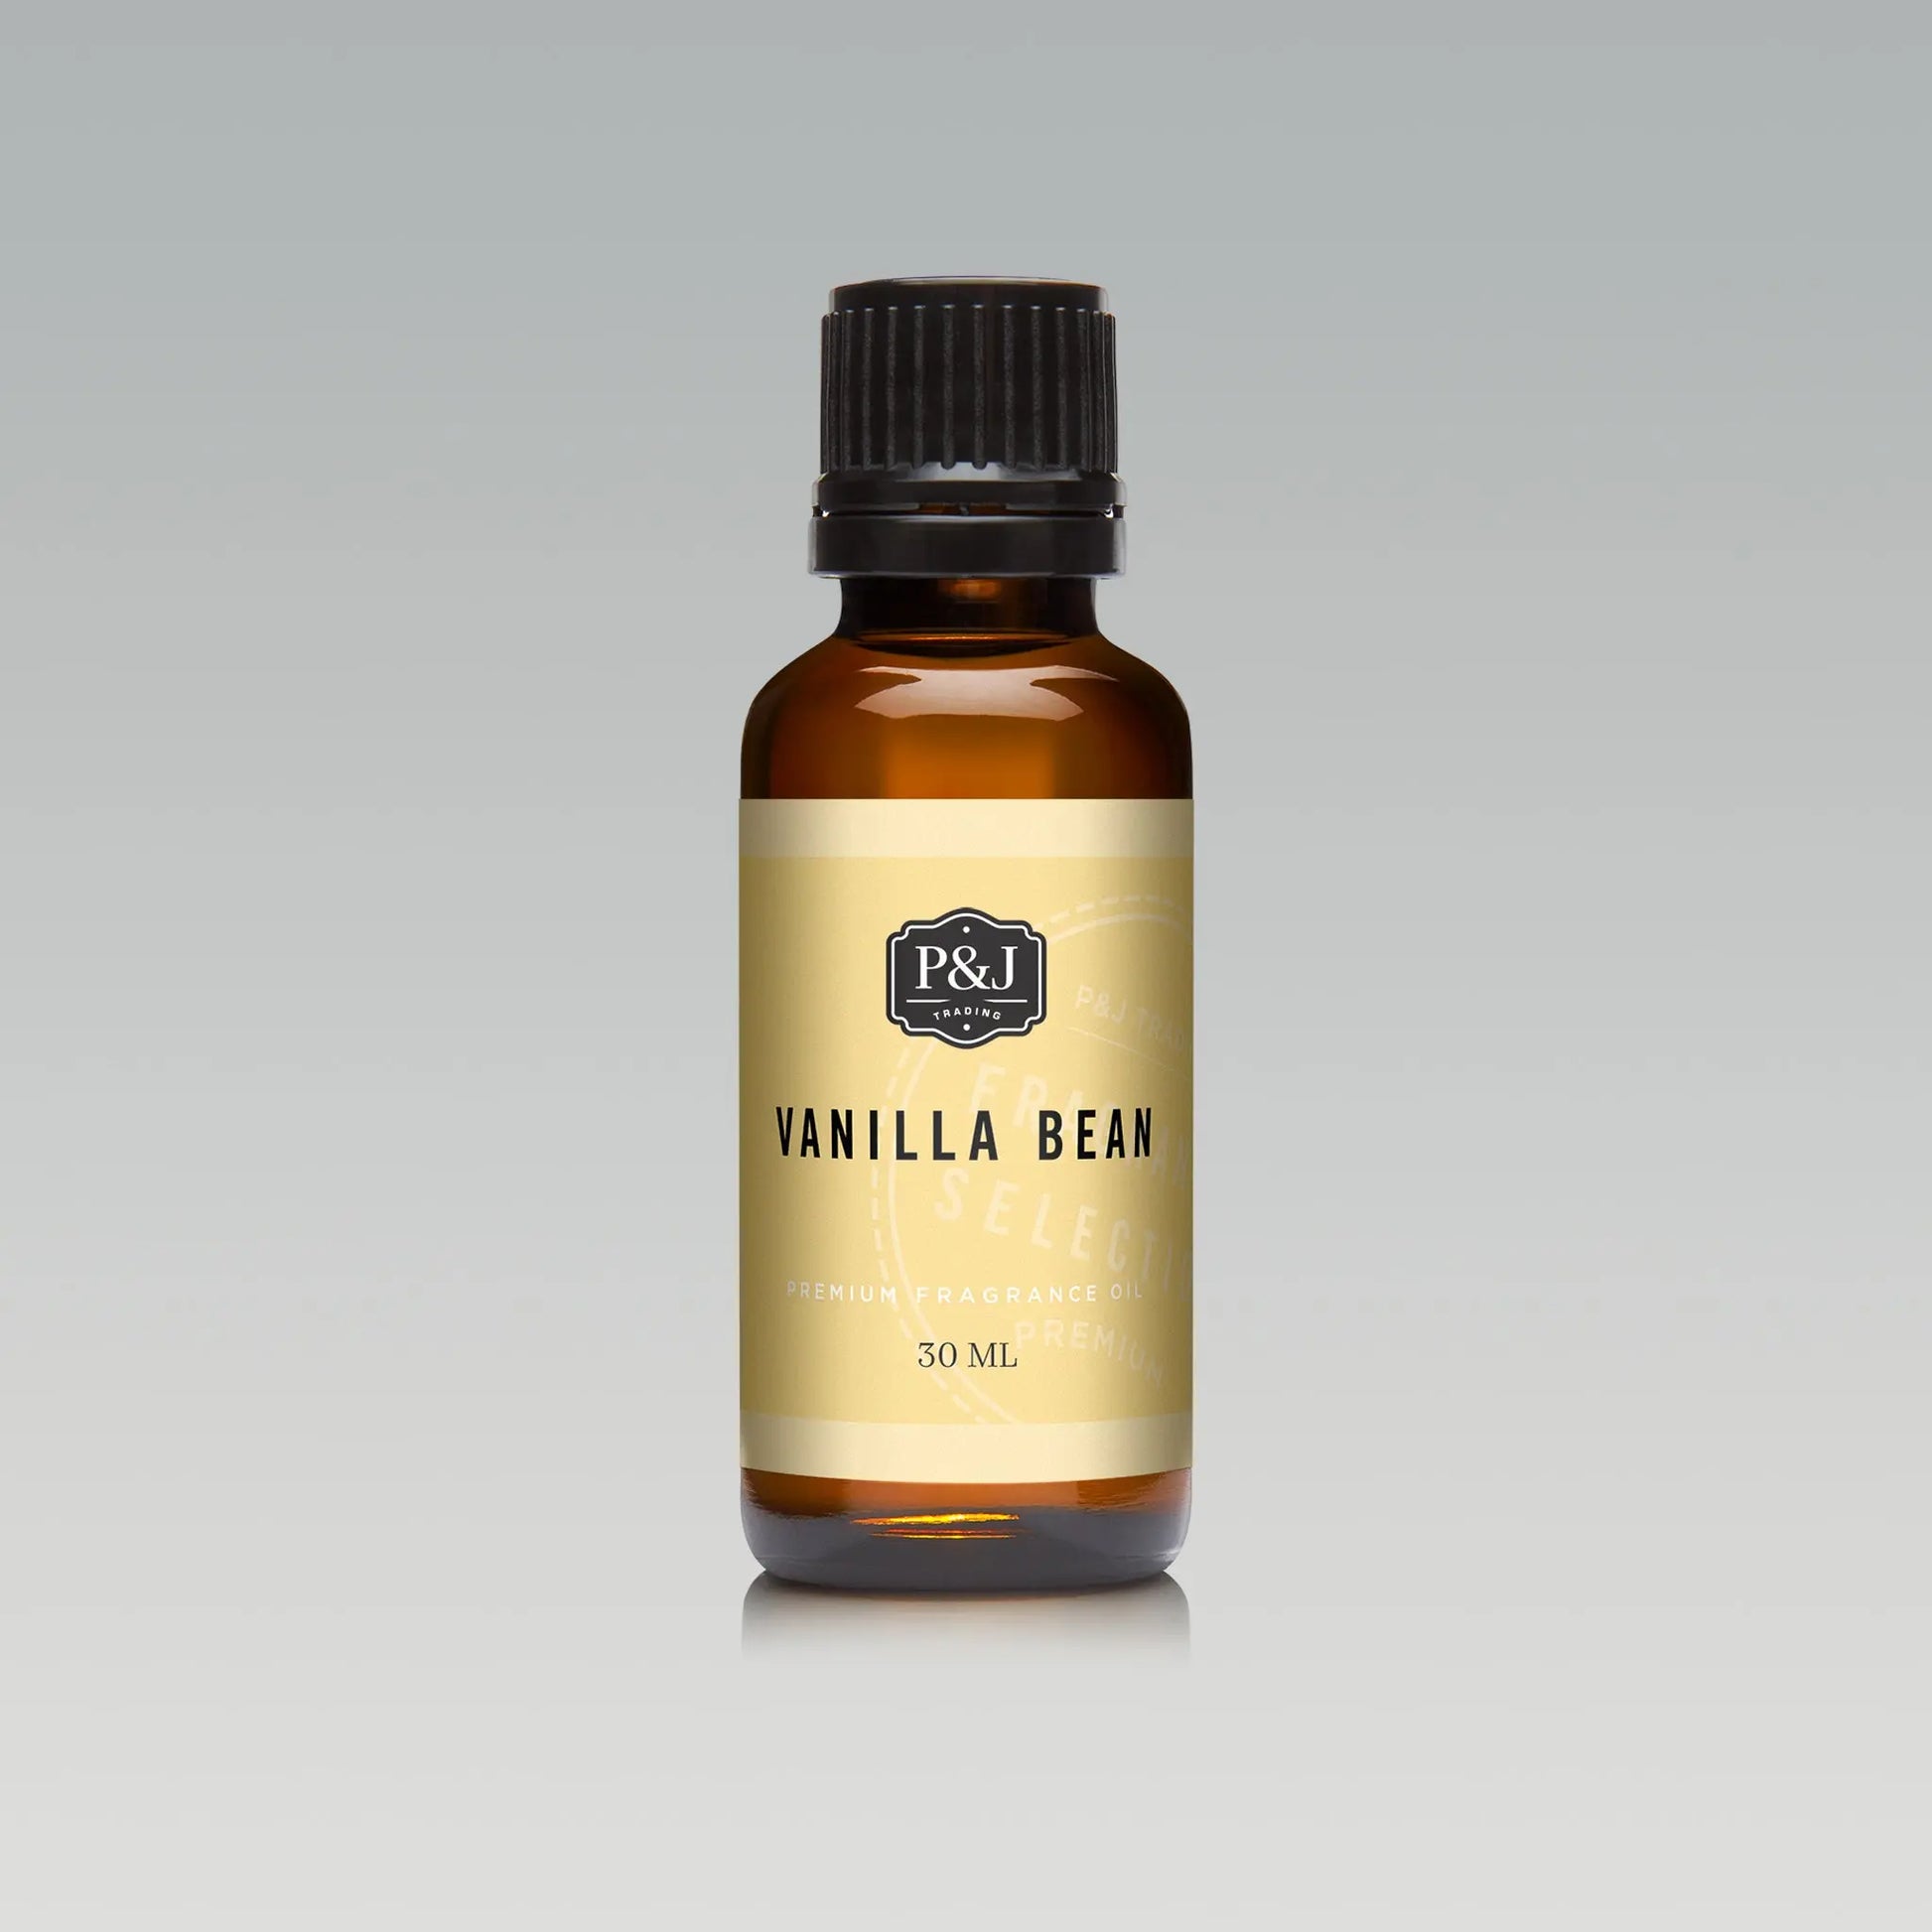 French Vanilla Fragrance Oil - Premium Grade Scented Oil - 100ml